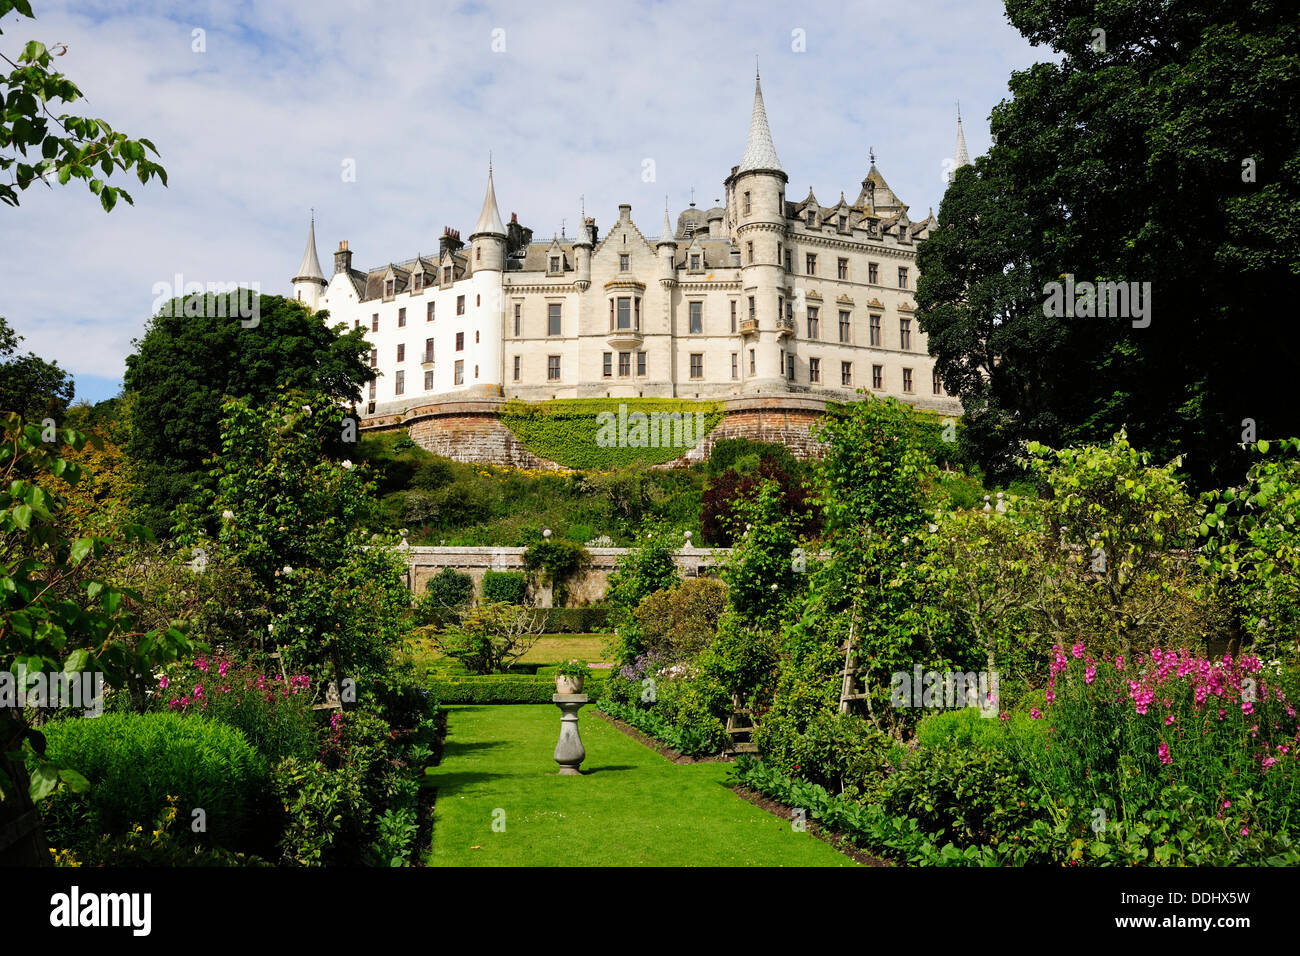 Dunrobin Castle, la demeure ancestrale du clan Sutherland, avec jardin Banque D'Images